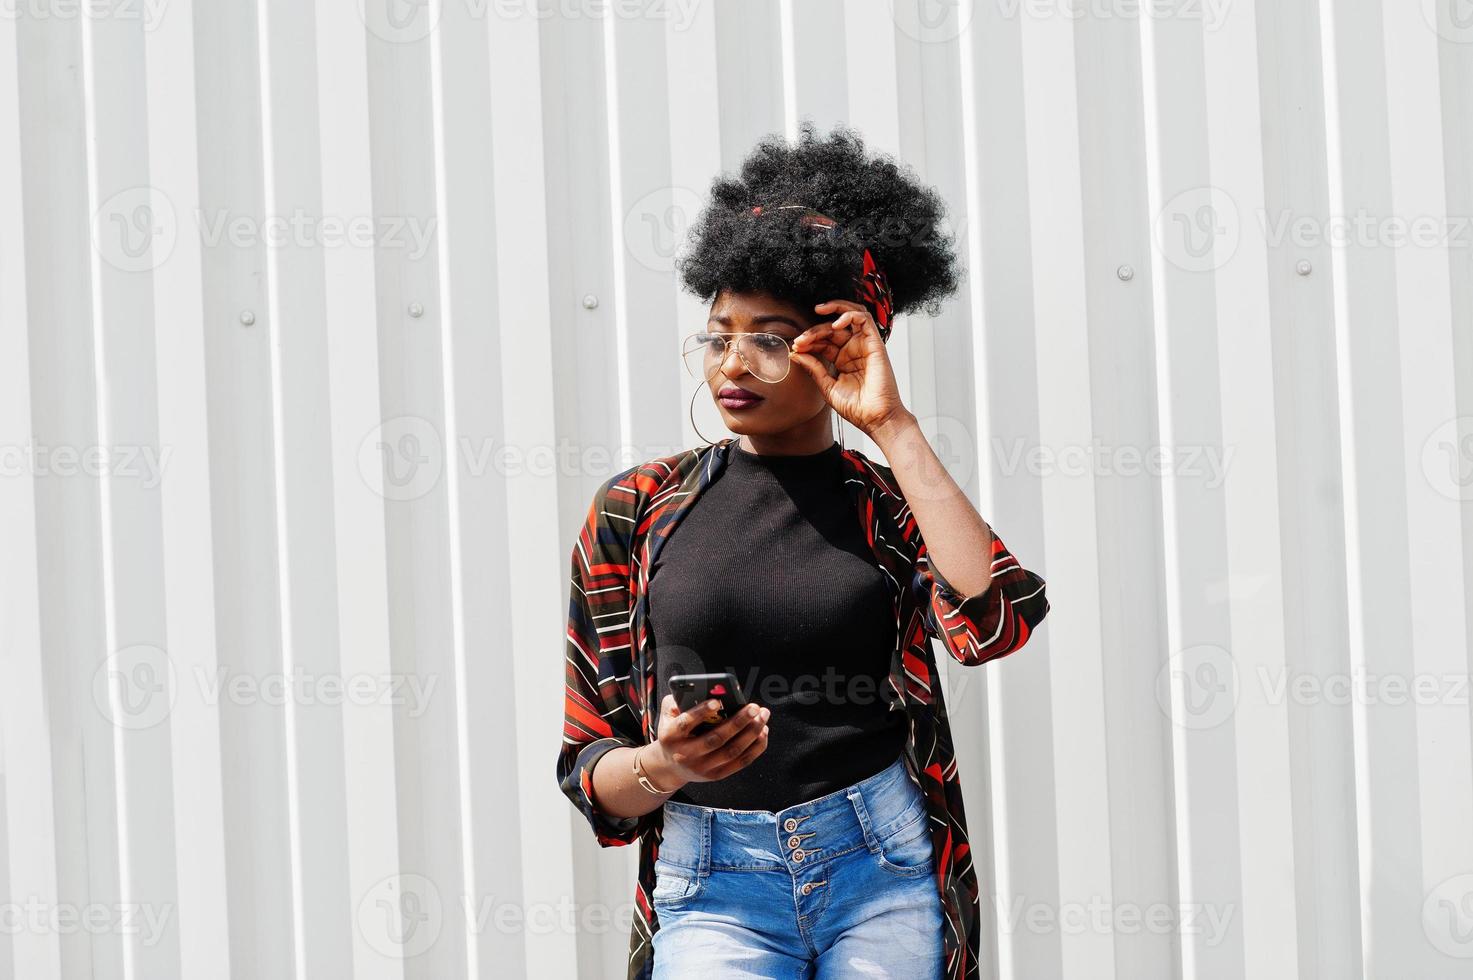 afrikaanse vrouw met afrohaar, in jeansbroek en bril poseerde tegen witte stalen muur met mobiele telefoon in de hand. foto